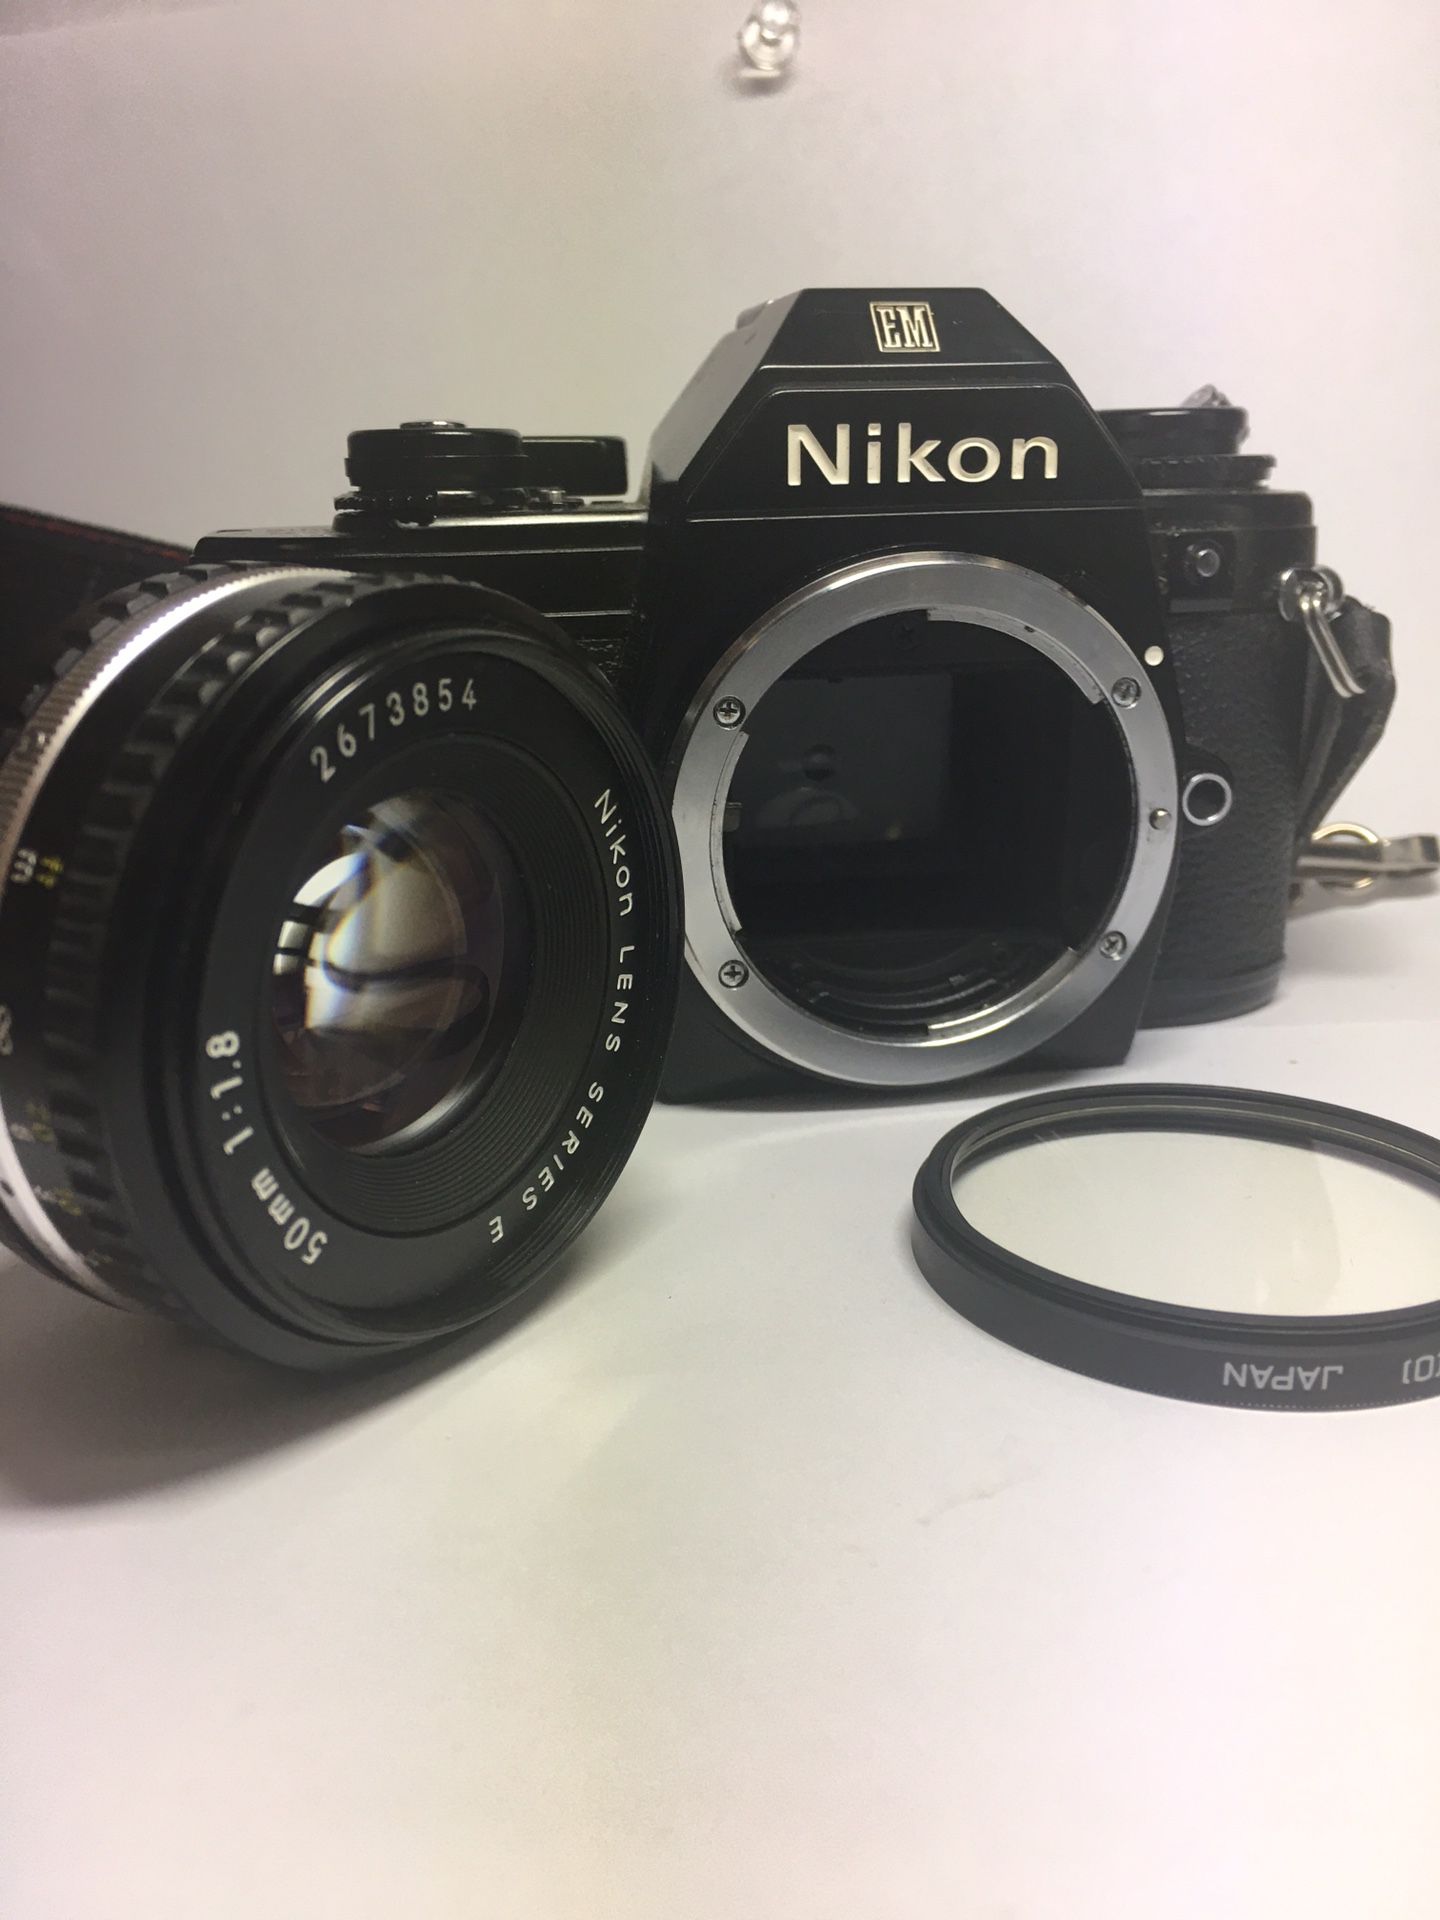 Nikon EM Film Camera with Nikon E series 50mm lens 1:1.8